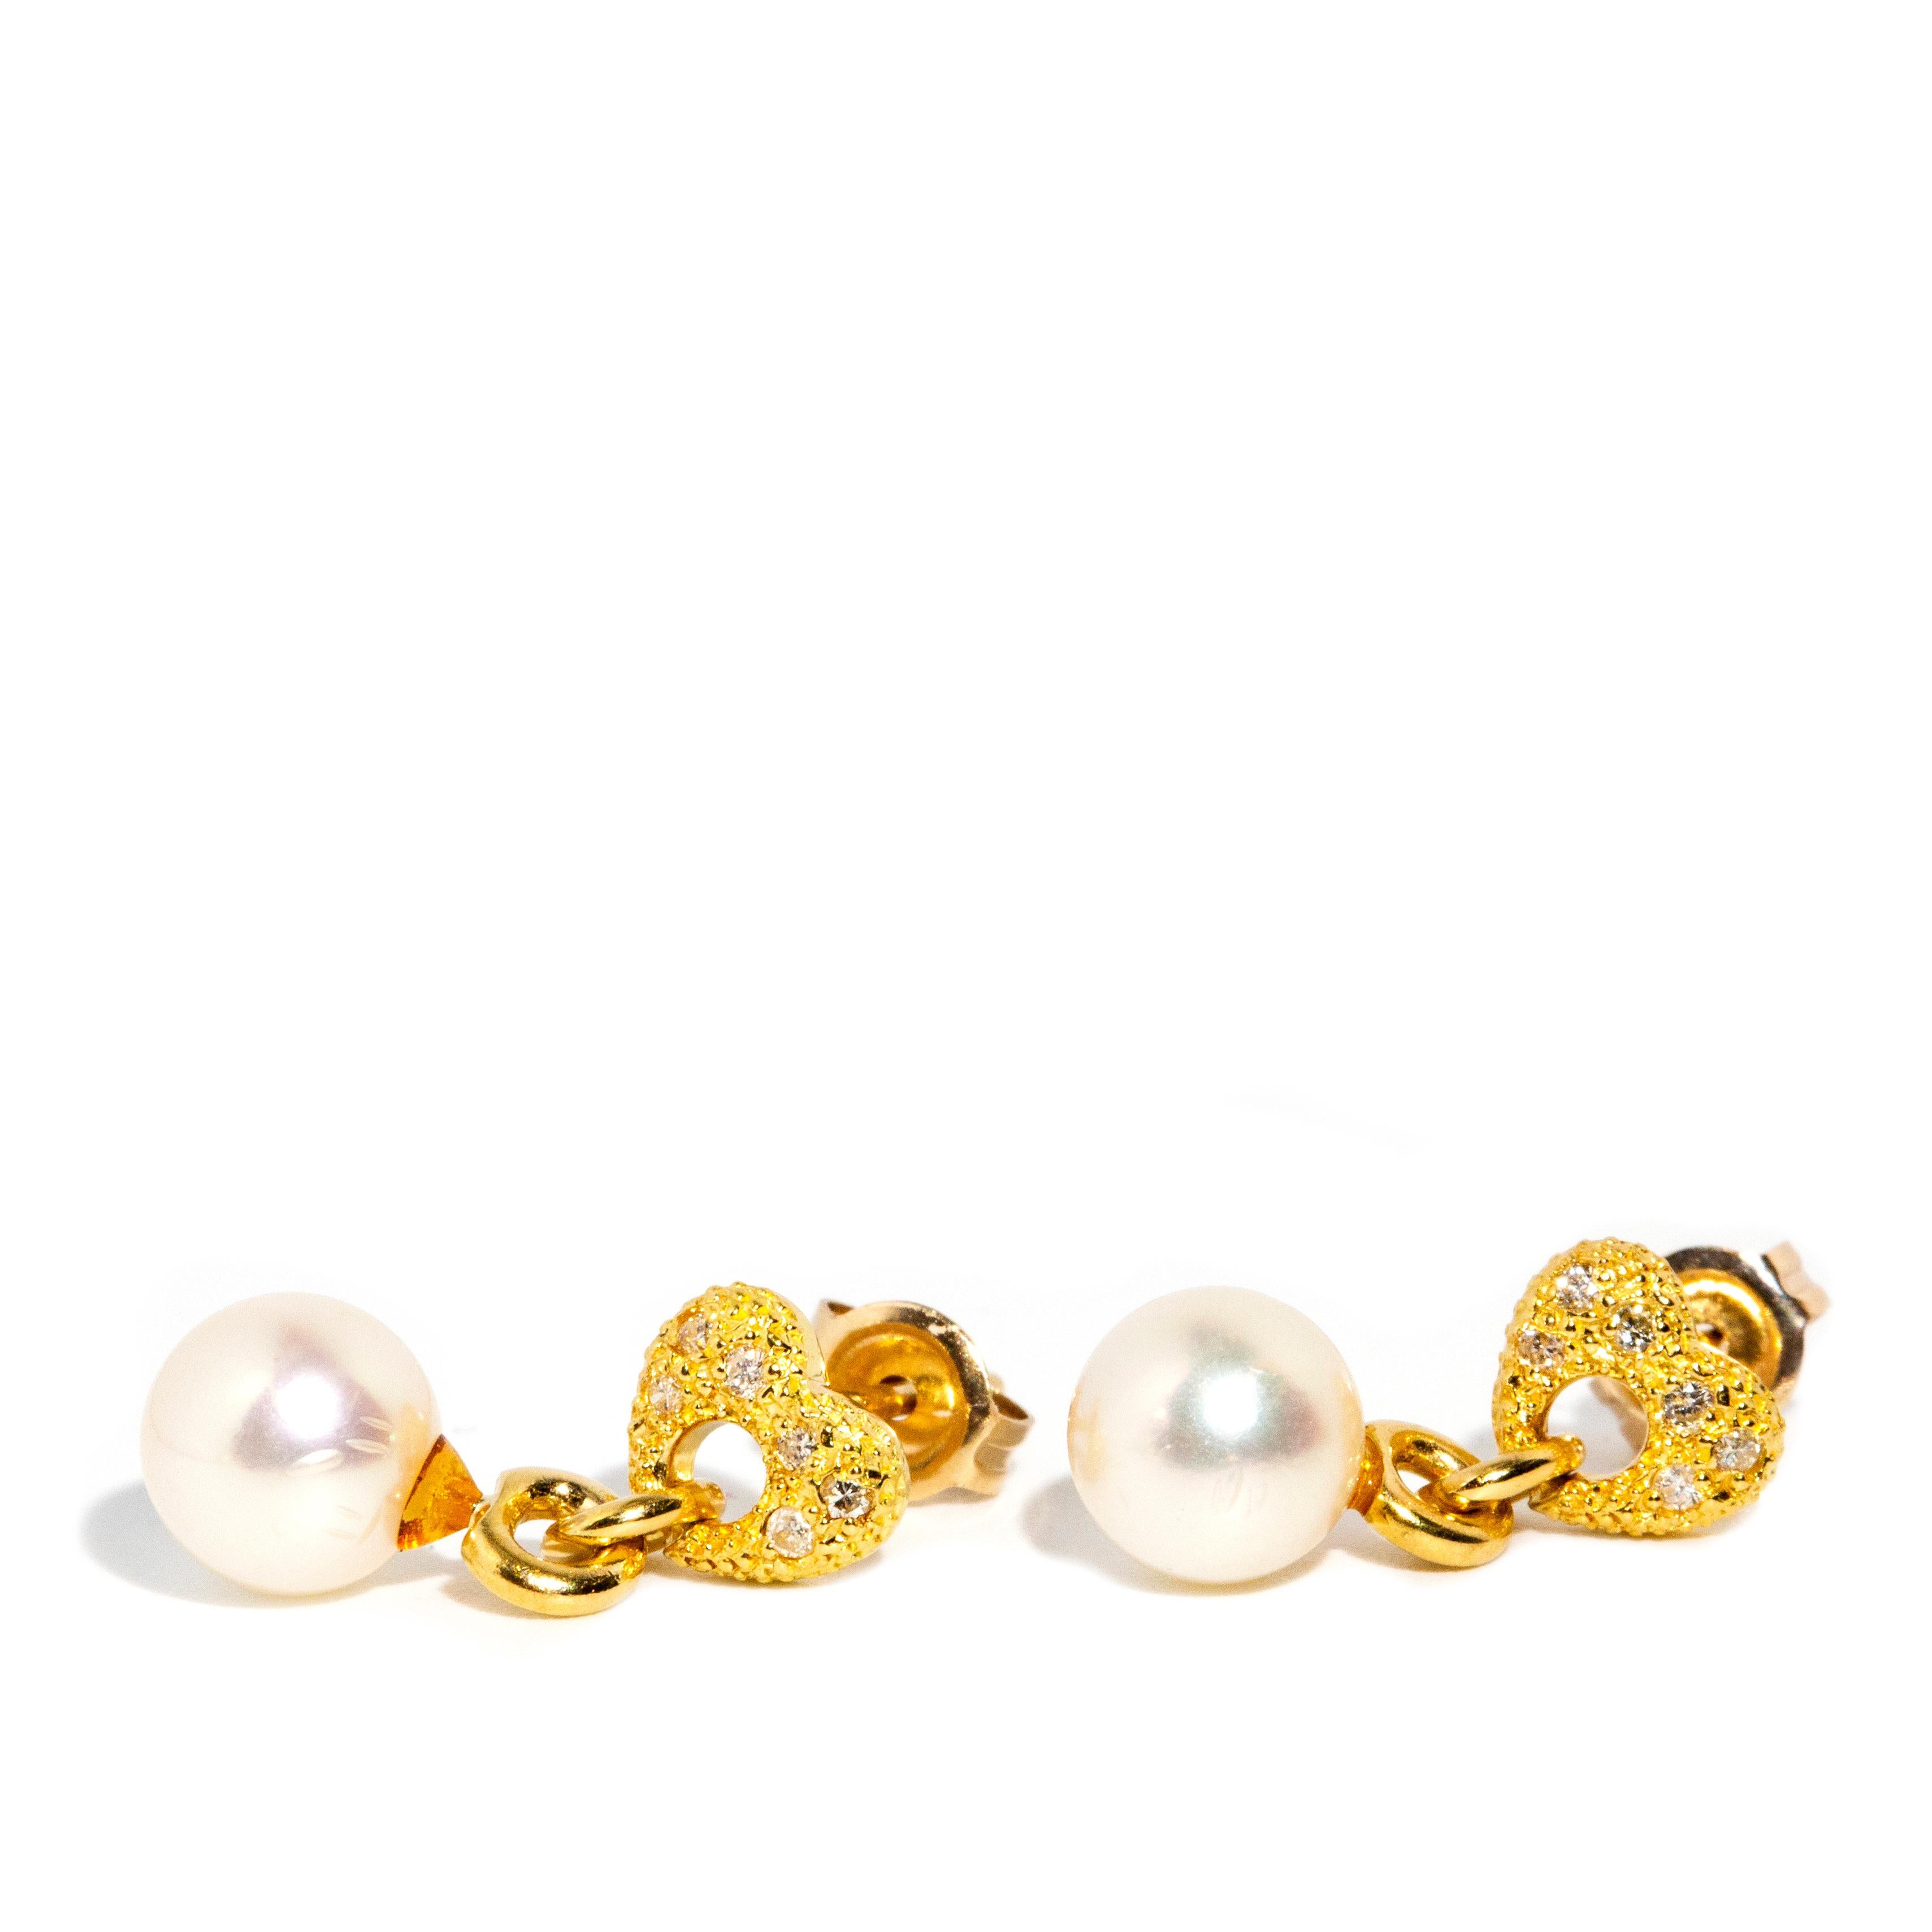 Diese bezaubernden Vintage-Ohrringe aus 18-karätigem Gold sind mit einer Vielzahl von Diamanten in einer strukturierten Herzfassung und einer wunderschönen Süßwasserperle besetzt. Sie tragen den Namen Almira-Ohrringe. Sie sehen zu jeder Zeit und an